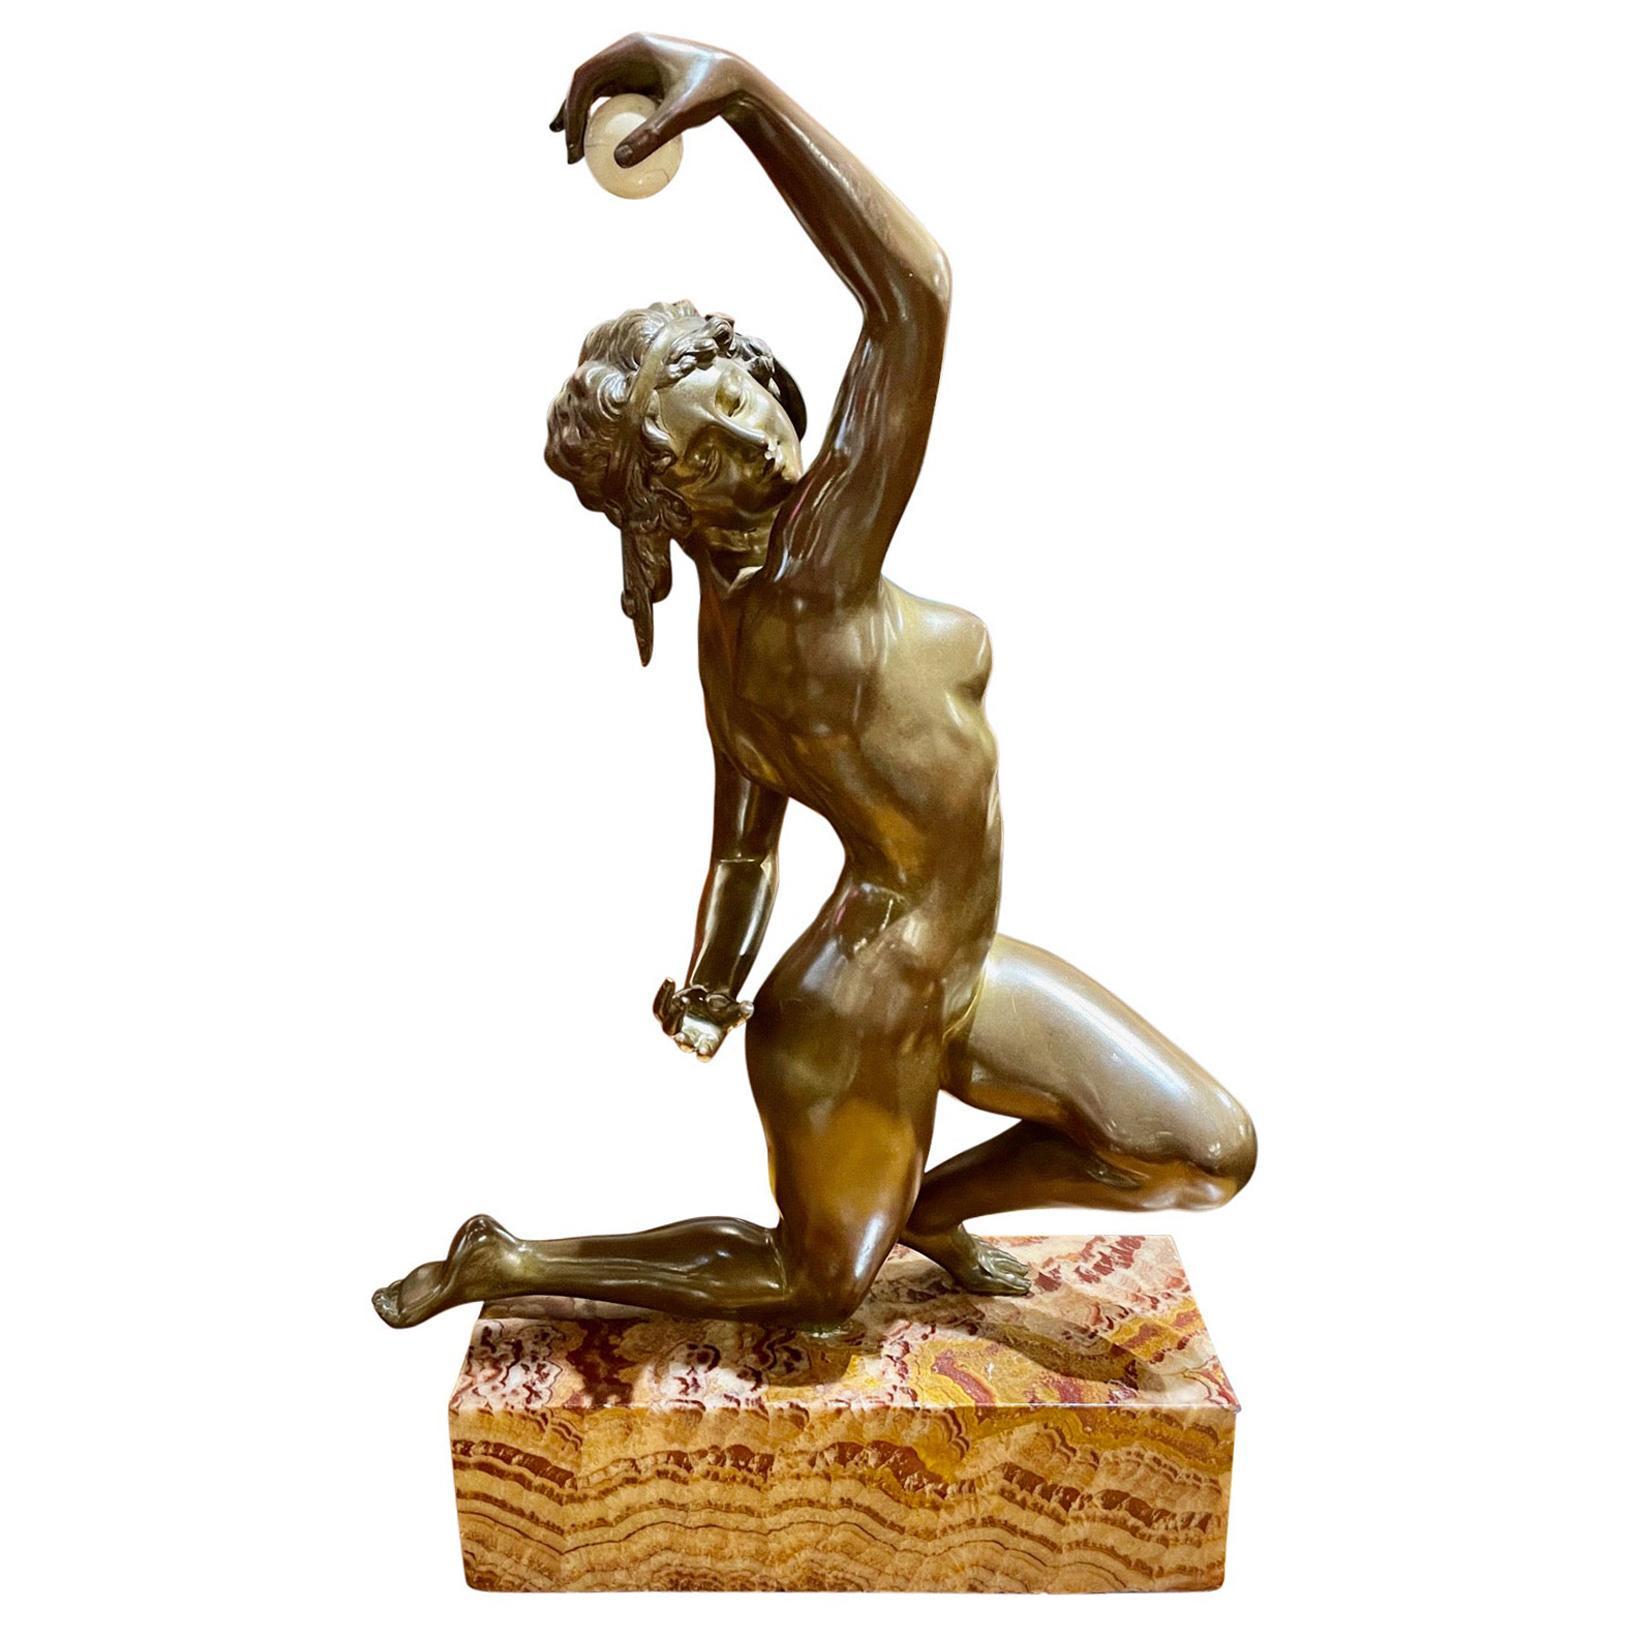 Sculpture de bronze en bronze du début de l'Art déco représentant une danseuse par Affortunato Gori. Il s'agit de l'une des pièces les plus spectaculaires que nous ayons proposées. La patine d'or sombre est lisse et impeccable, mettant en valeur